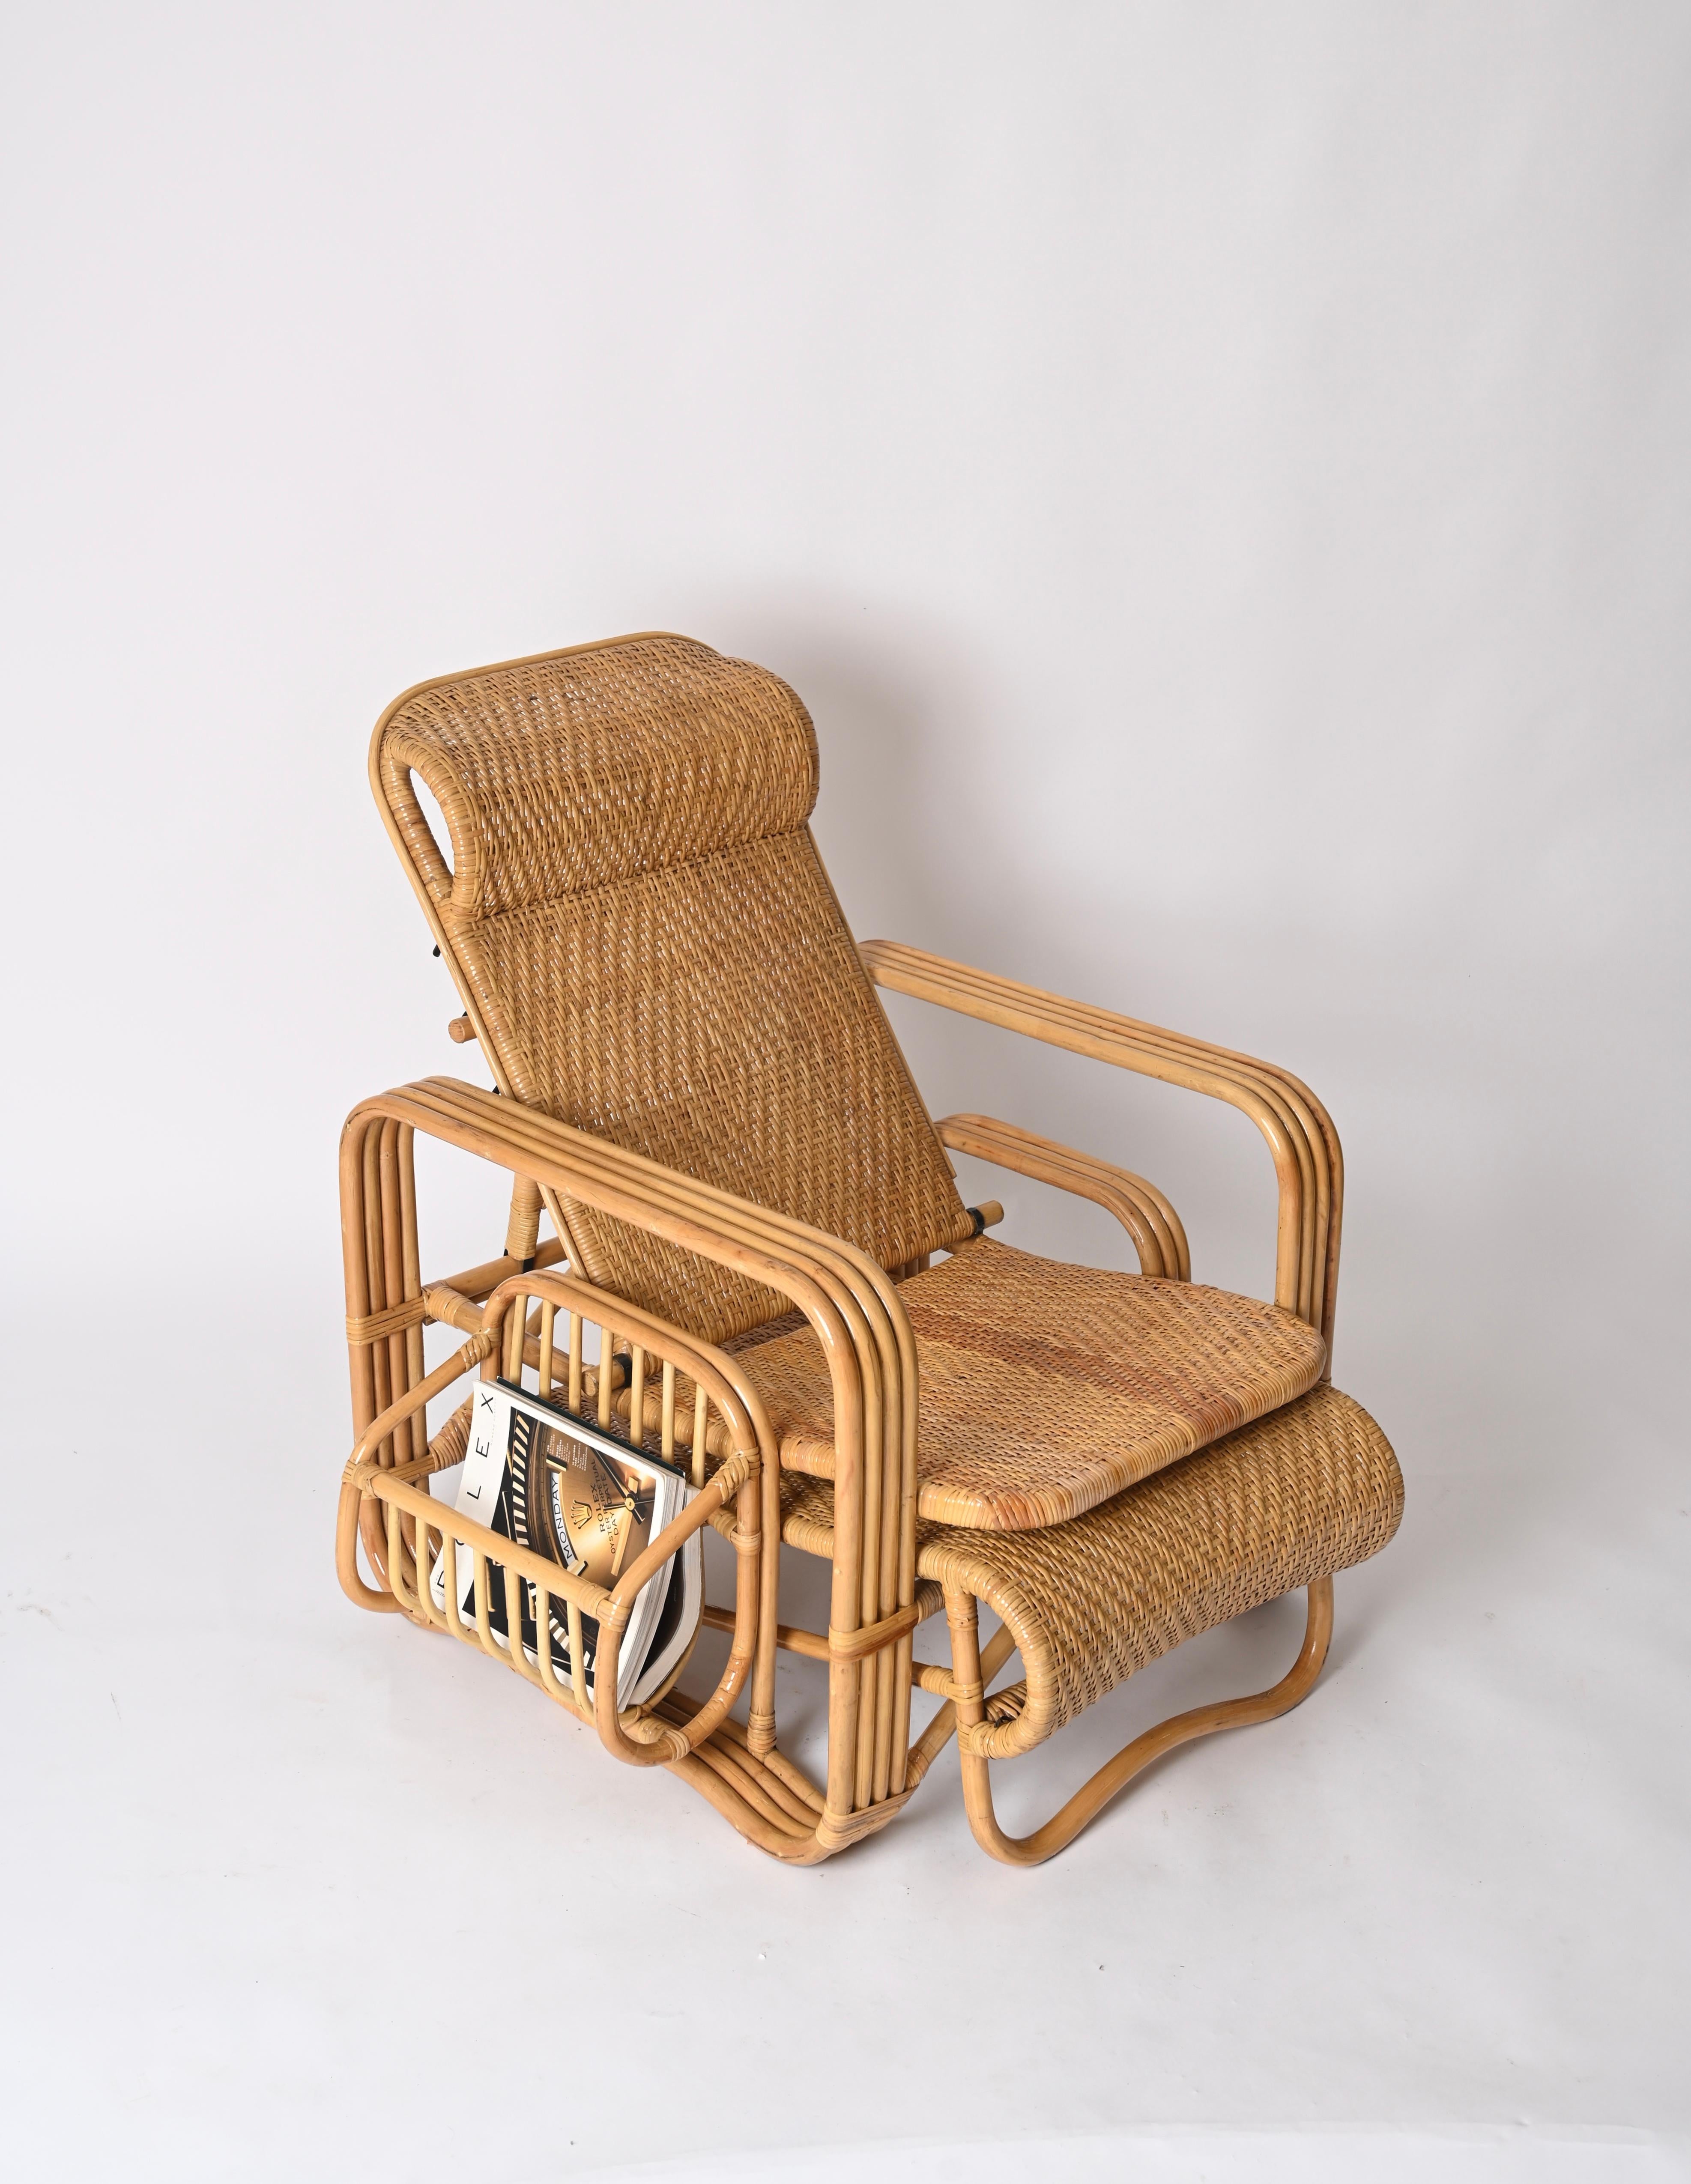 Spektakulärer, verstellbarer Sessel / Loungesessel aus gebogenem Bambus, Rattan und handgeflochtener Weide.  Dieser wunderschöne Sessel wurde in den 1970er Jahren in Italien hergestellt und ist ein Meisterwerk der Firma Vivai del Sud.

Diese